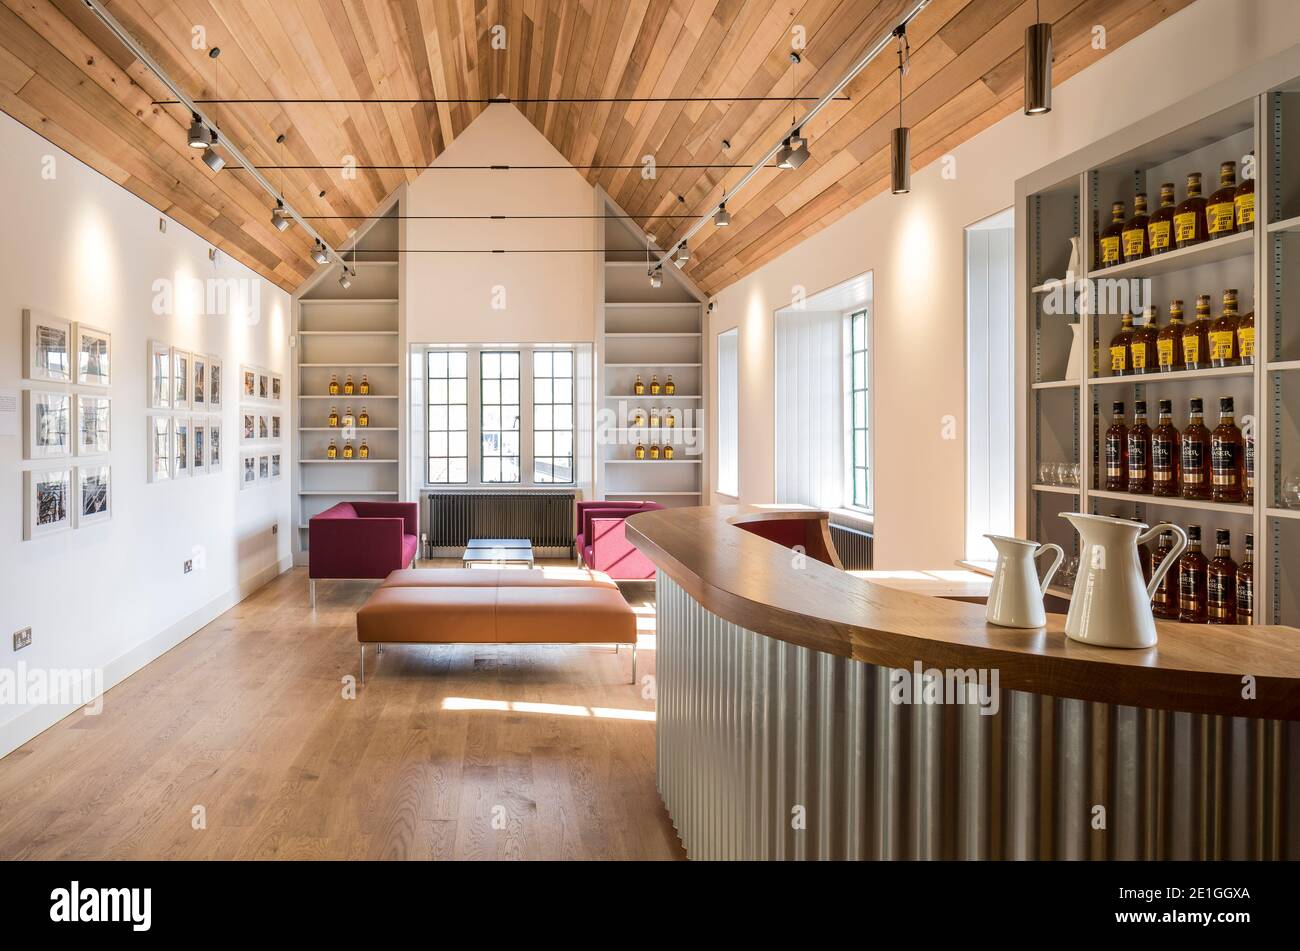 Vue intérieure de la salle de dégustation de la distillerie Borders, Hawick, Écosse, Royaume-Uni. Lauréat du prix Architects Journal Retrofit 2018 et du prix Civic Trust 2019 Banque D'Images